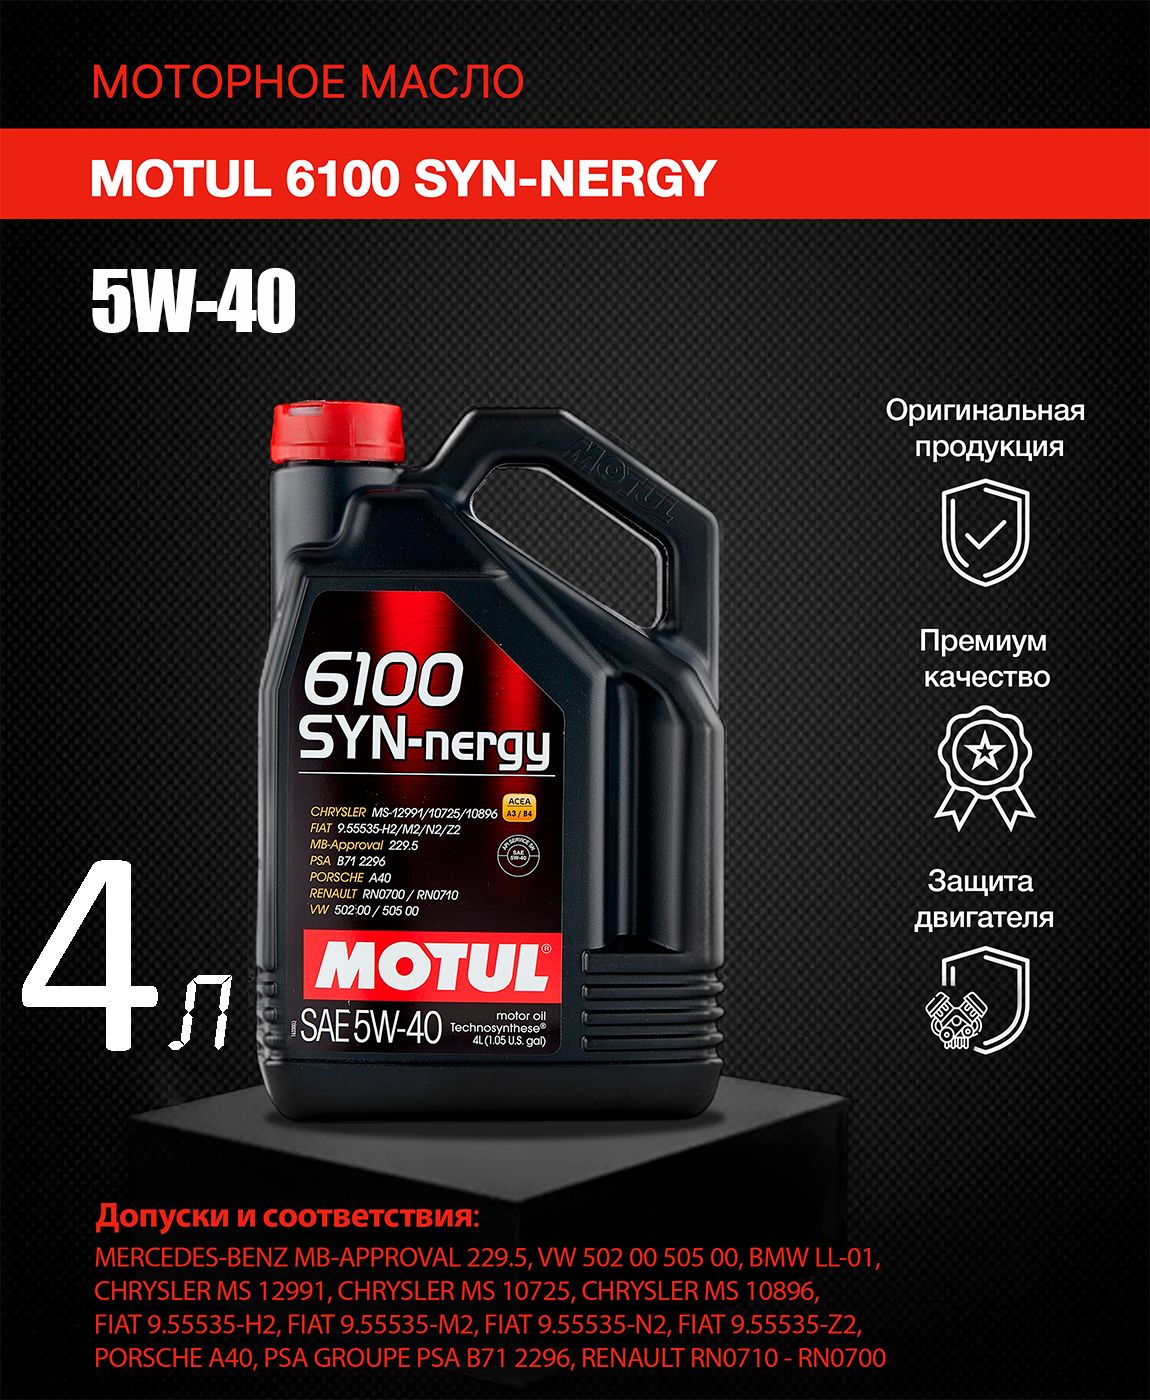 モチュール MOTUL 6100 SYN-NERGY 5W40 20L 正規品 高級素材使用ブランド - メンテナンス